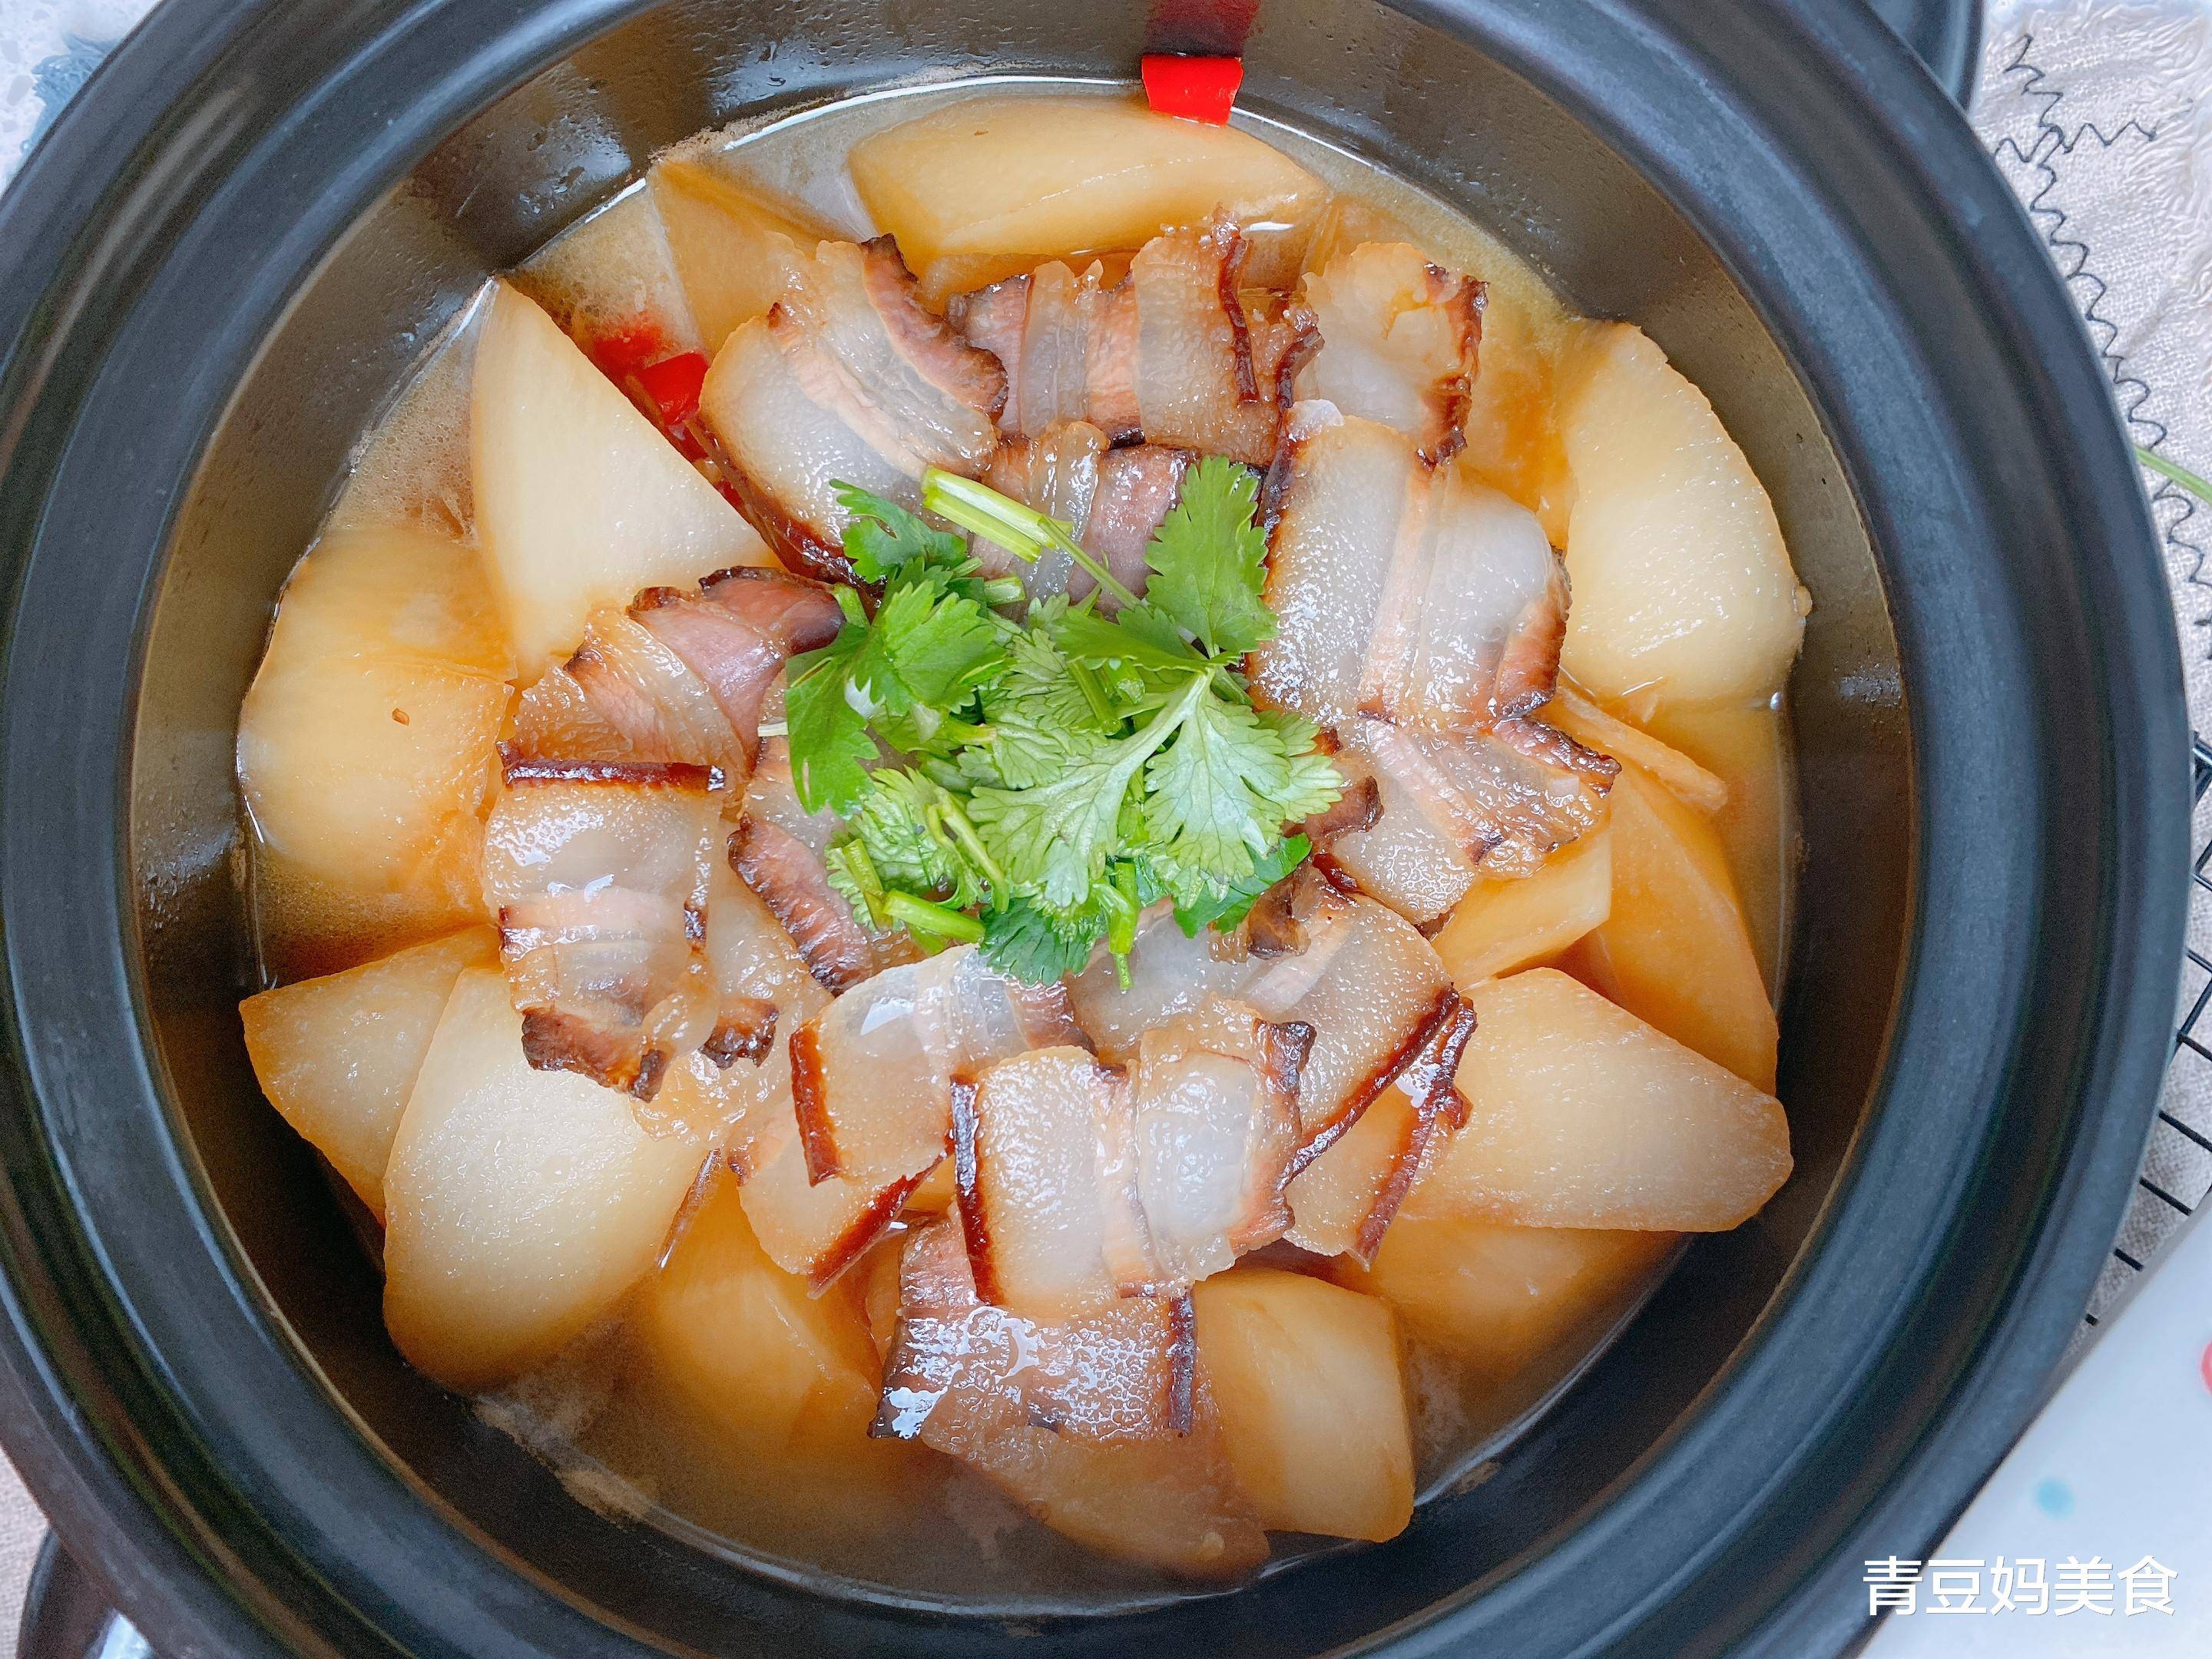 萝卜和腊肉是绝配,这样炖一锅,15分钟就上桌,冬天越吃